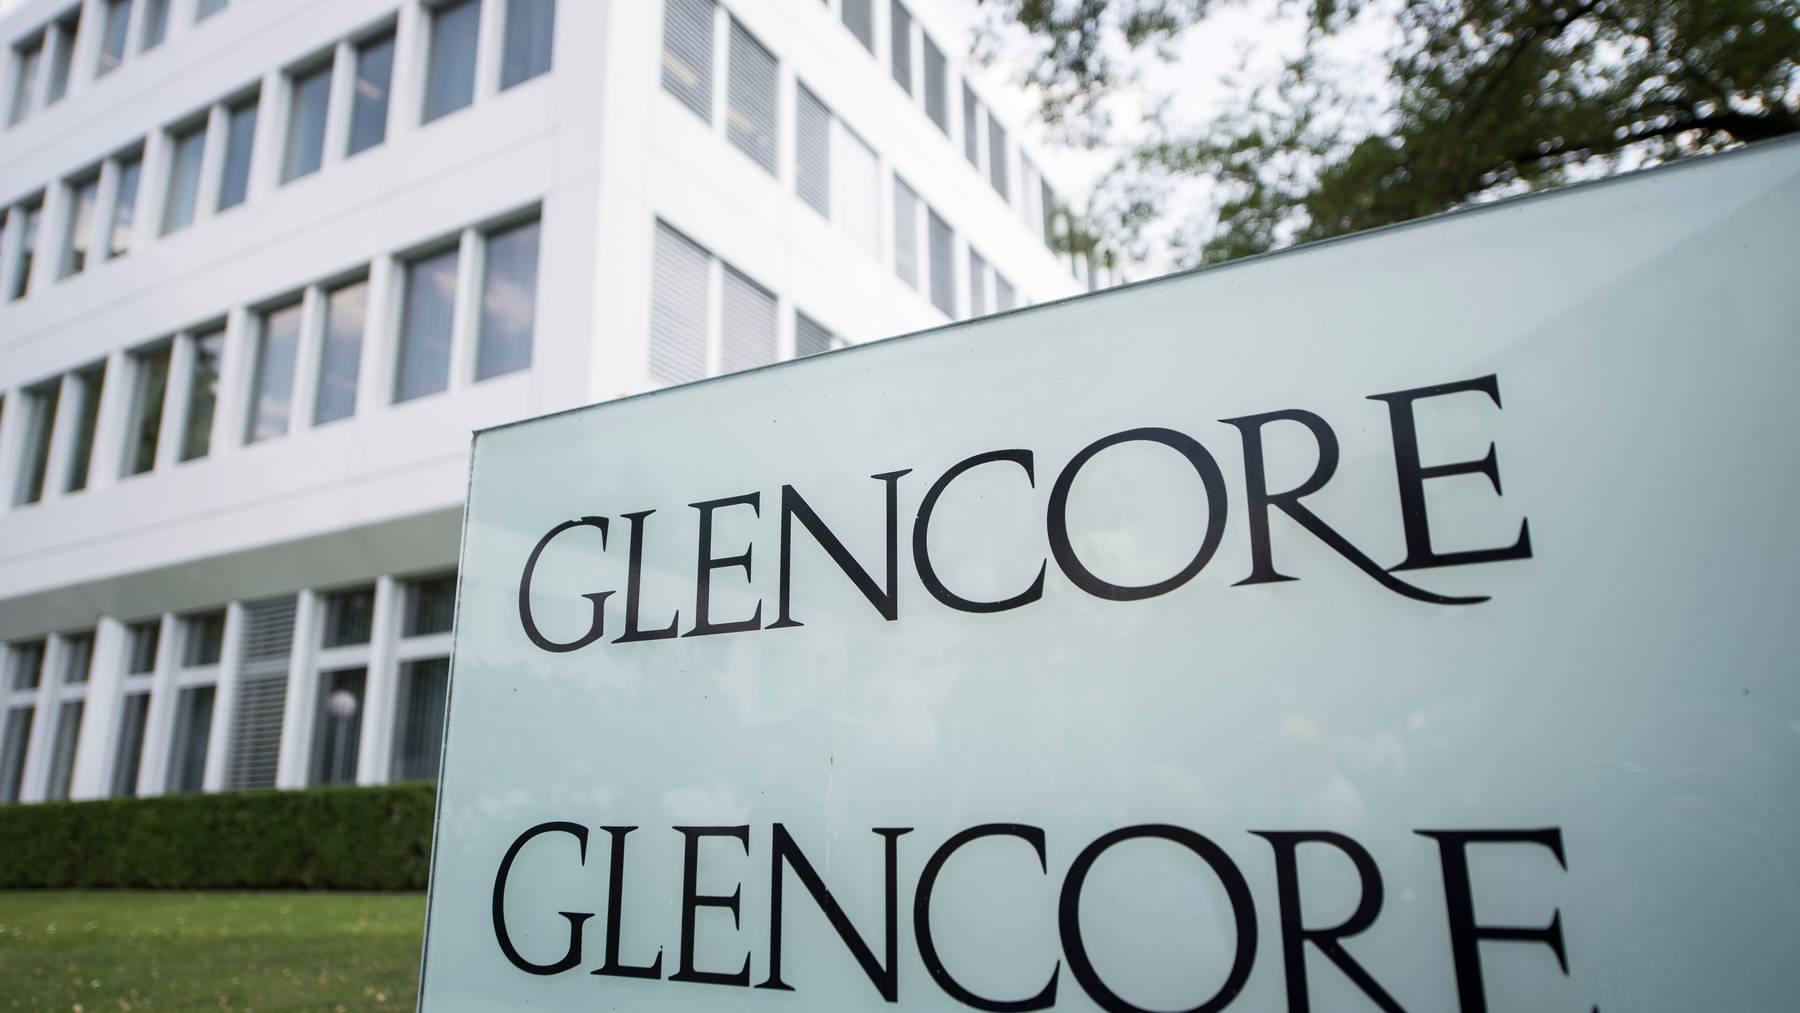 Der Hauptsitz des globalen Konzerns Glencore befindet sich in Baar, Zug.